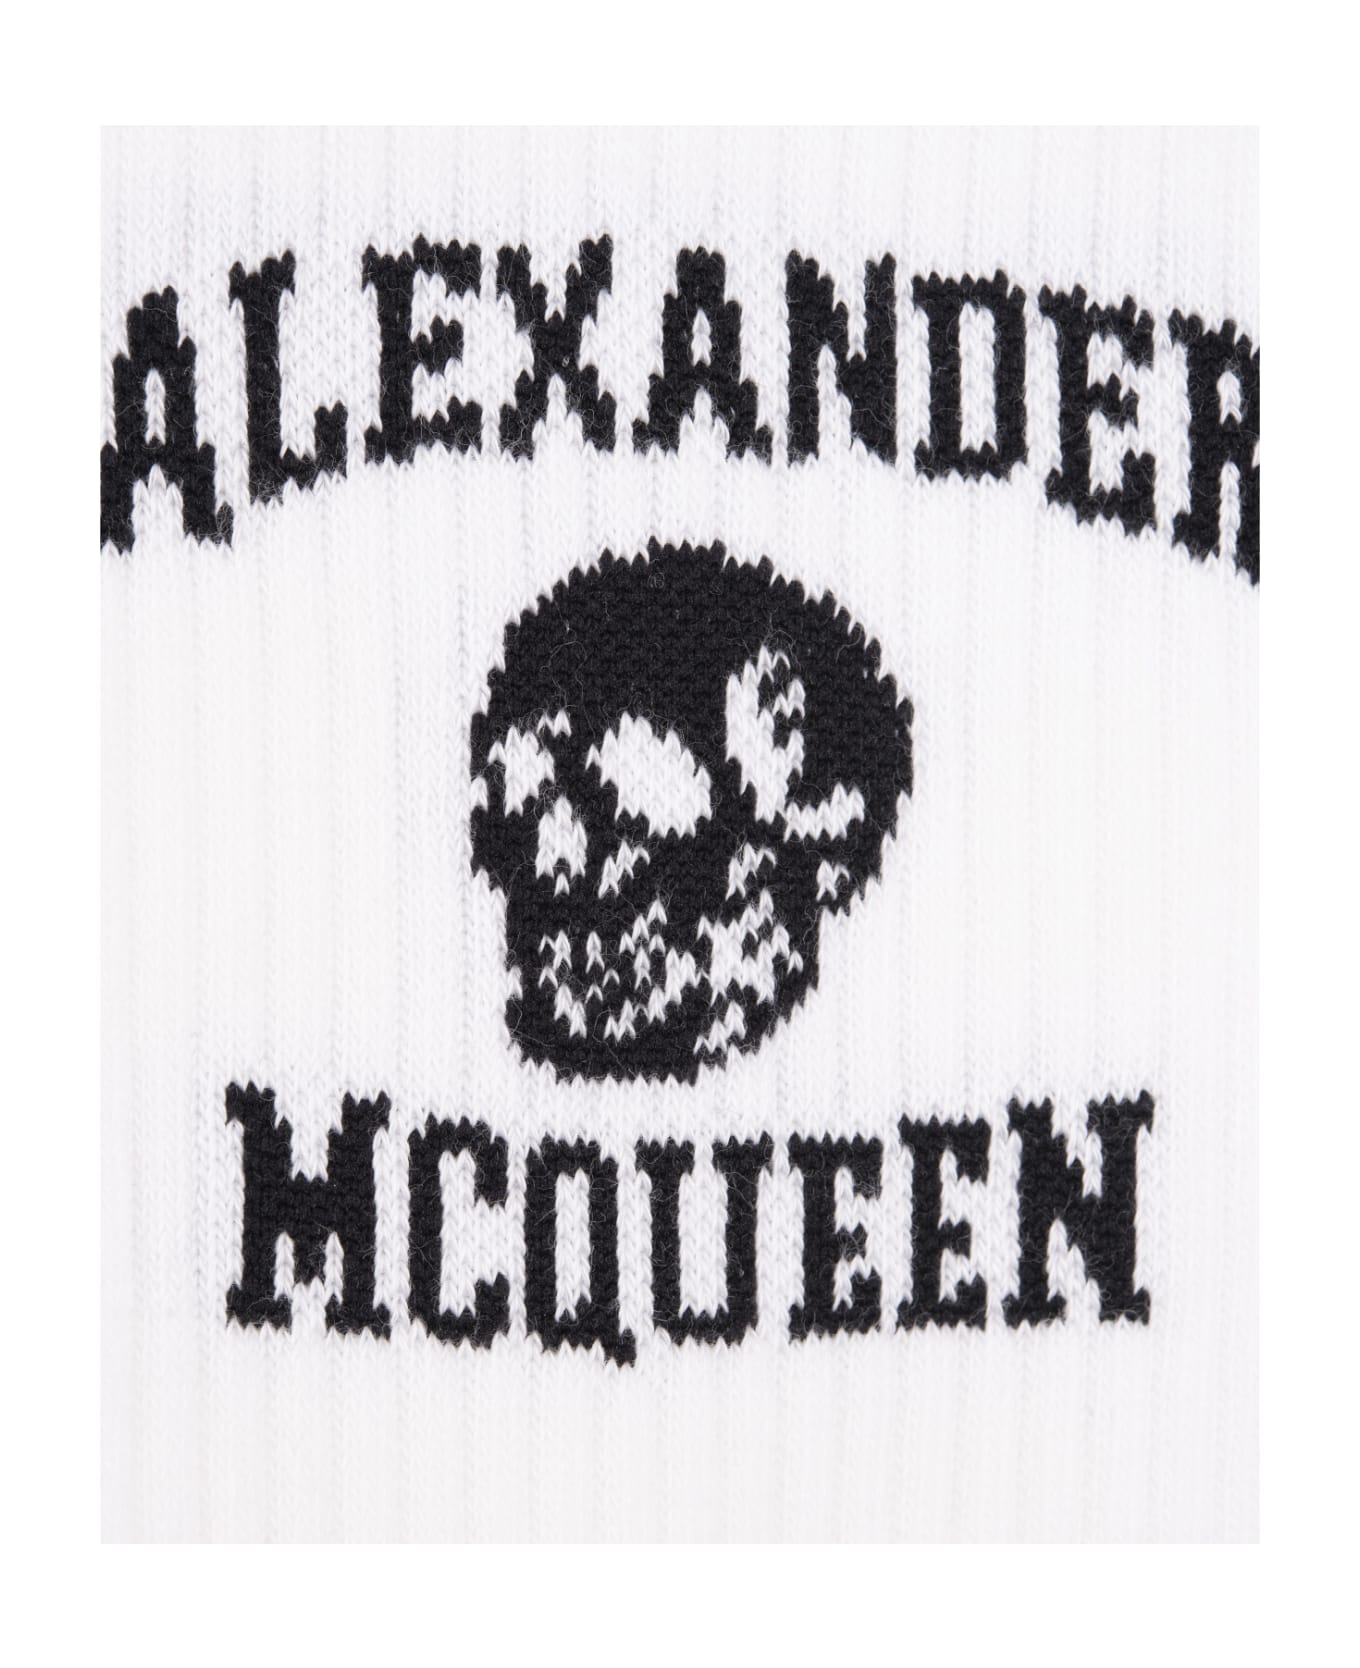 Alexander McQueen Logo Skull Socks - Bianco 靴下